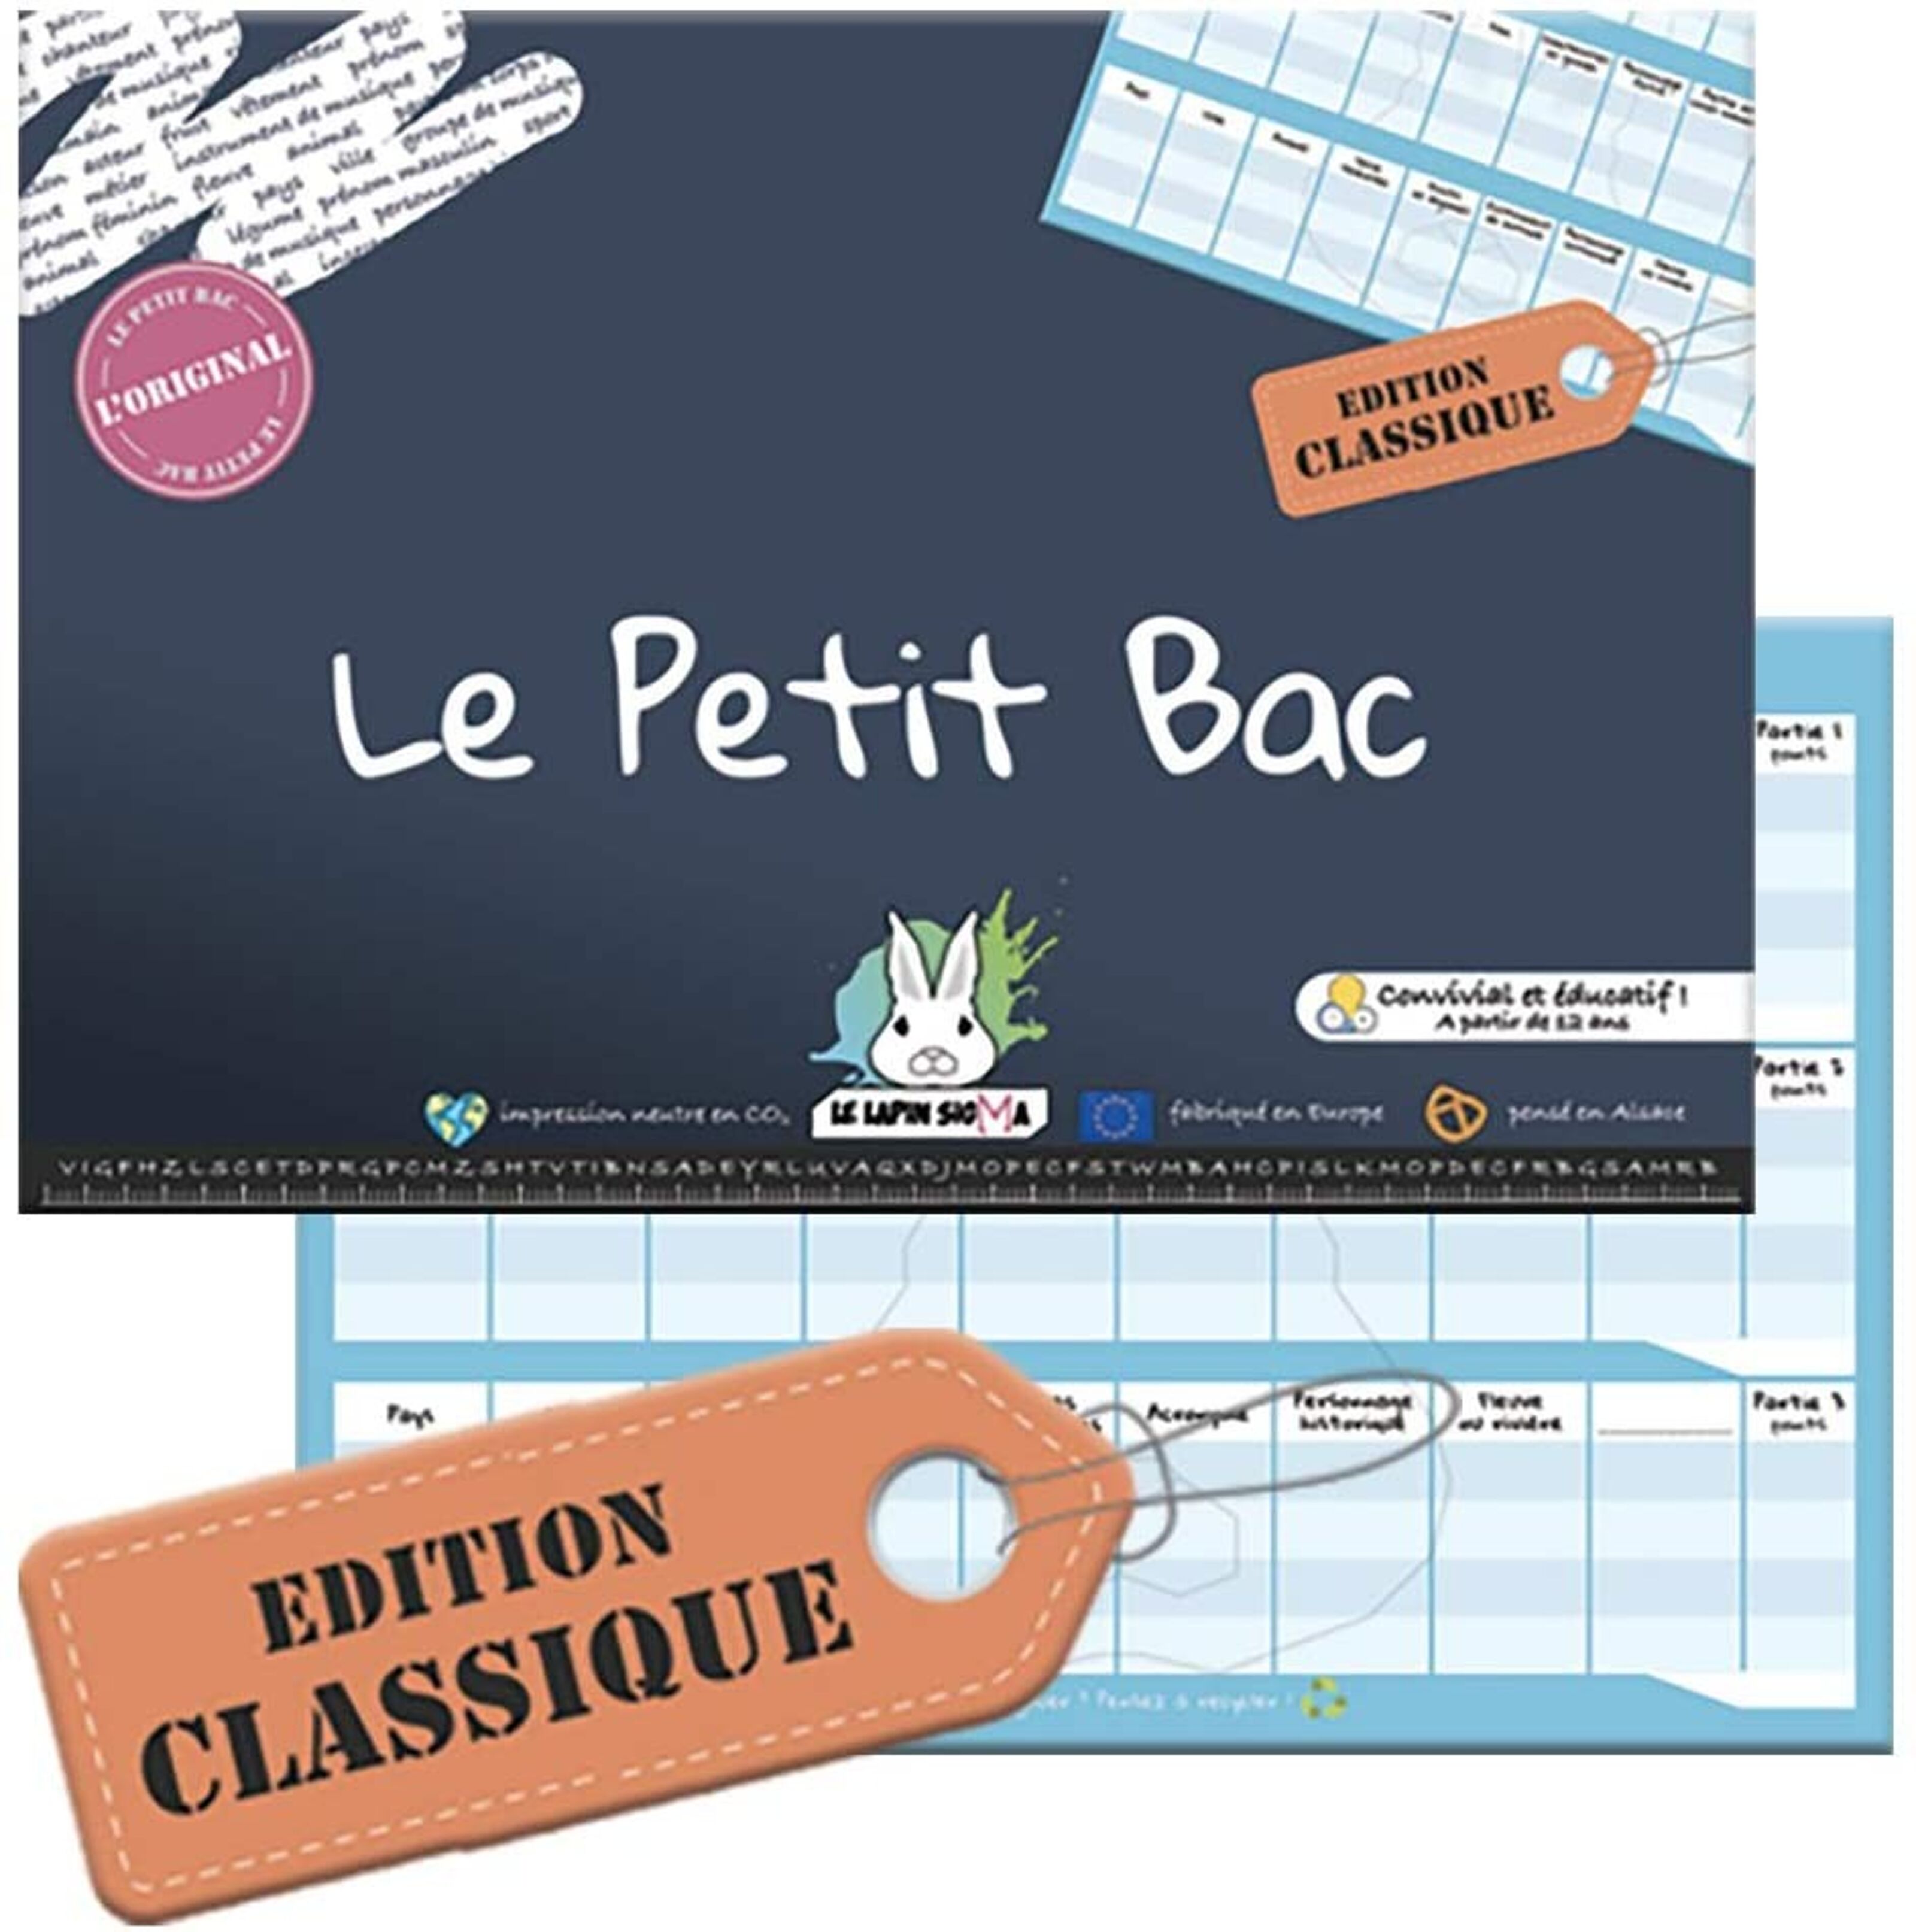 Buy wholesale Le Petit Bac - Classic Edition